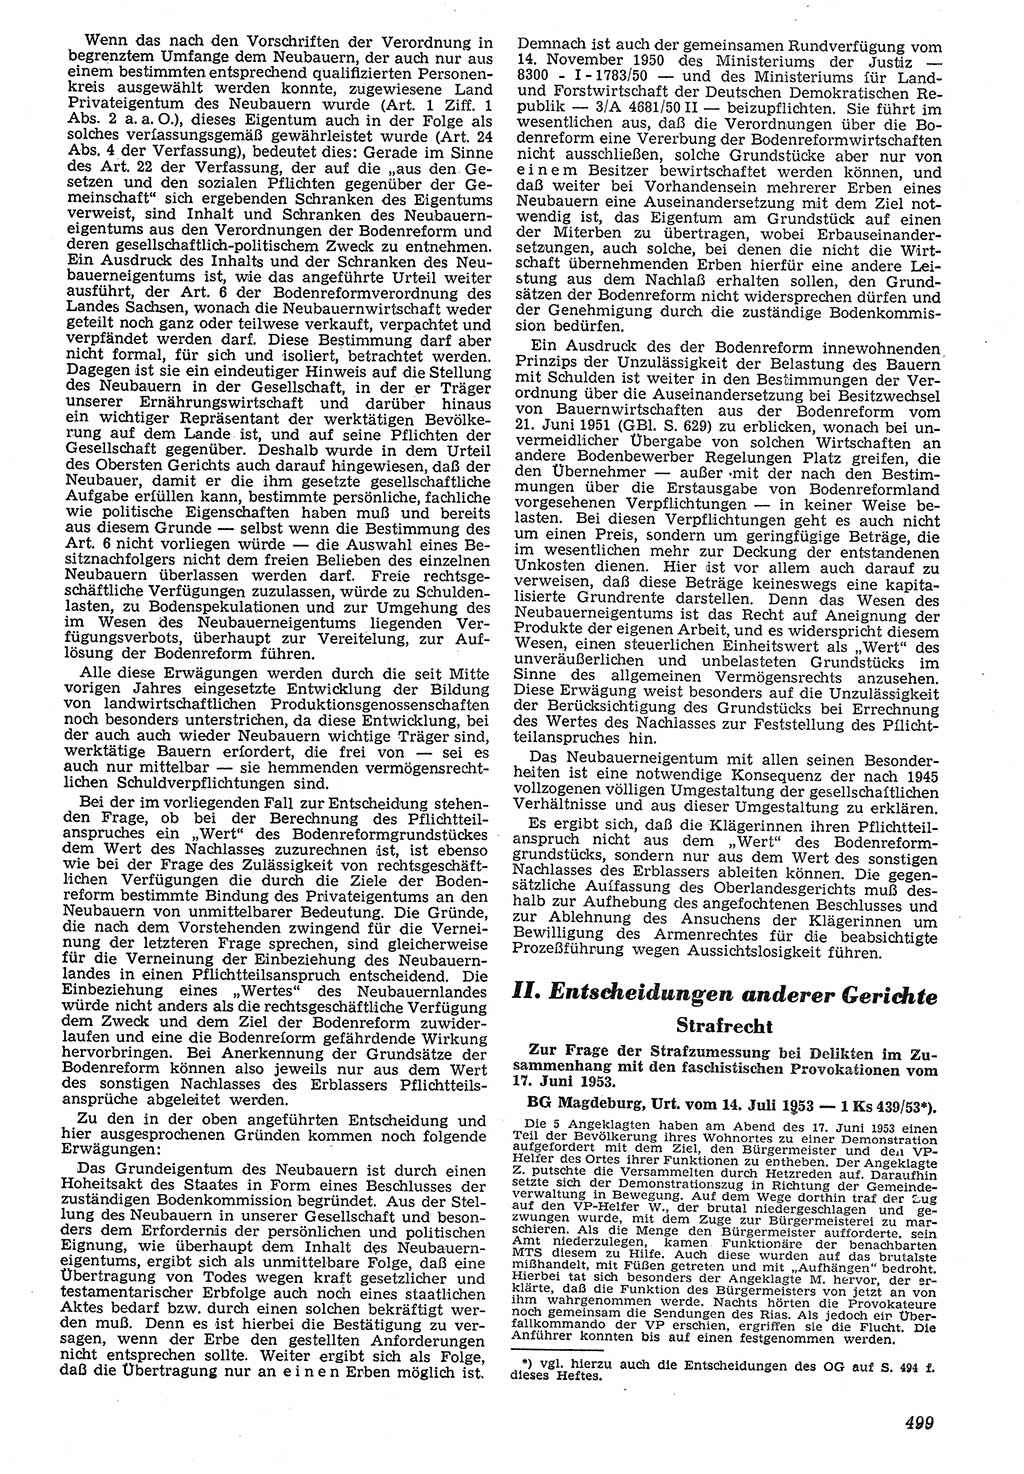 Neue Justiz (NJ), Zeitschrift für Recht und Rechtswissenschaft [Deutsche Demokratische Republik (DDR)], 7. Jahrgang 1953, Seite 499 (NJ DDR 1953, S. 499)